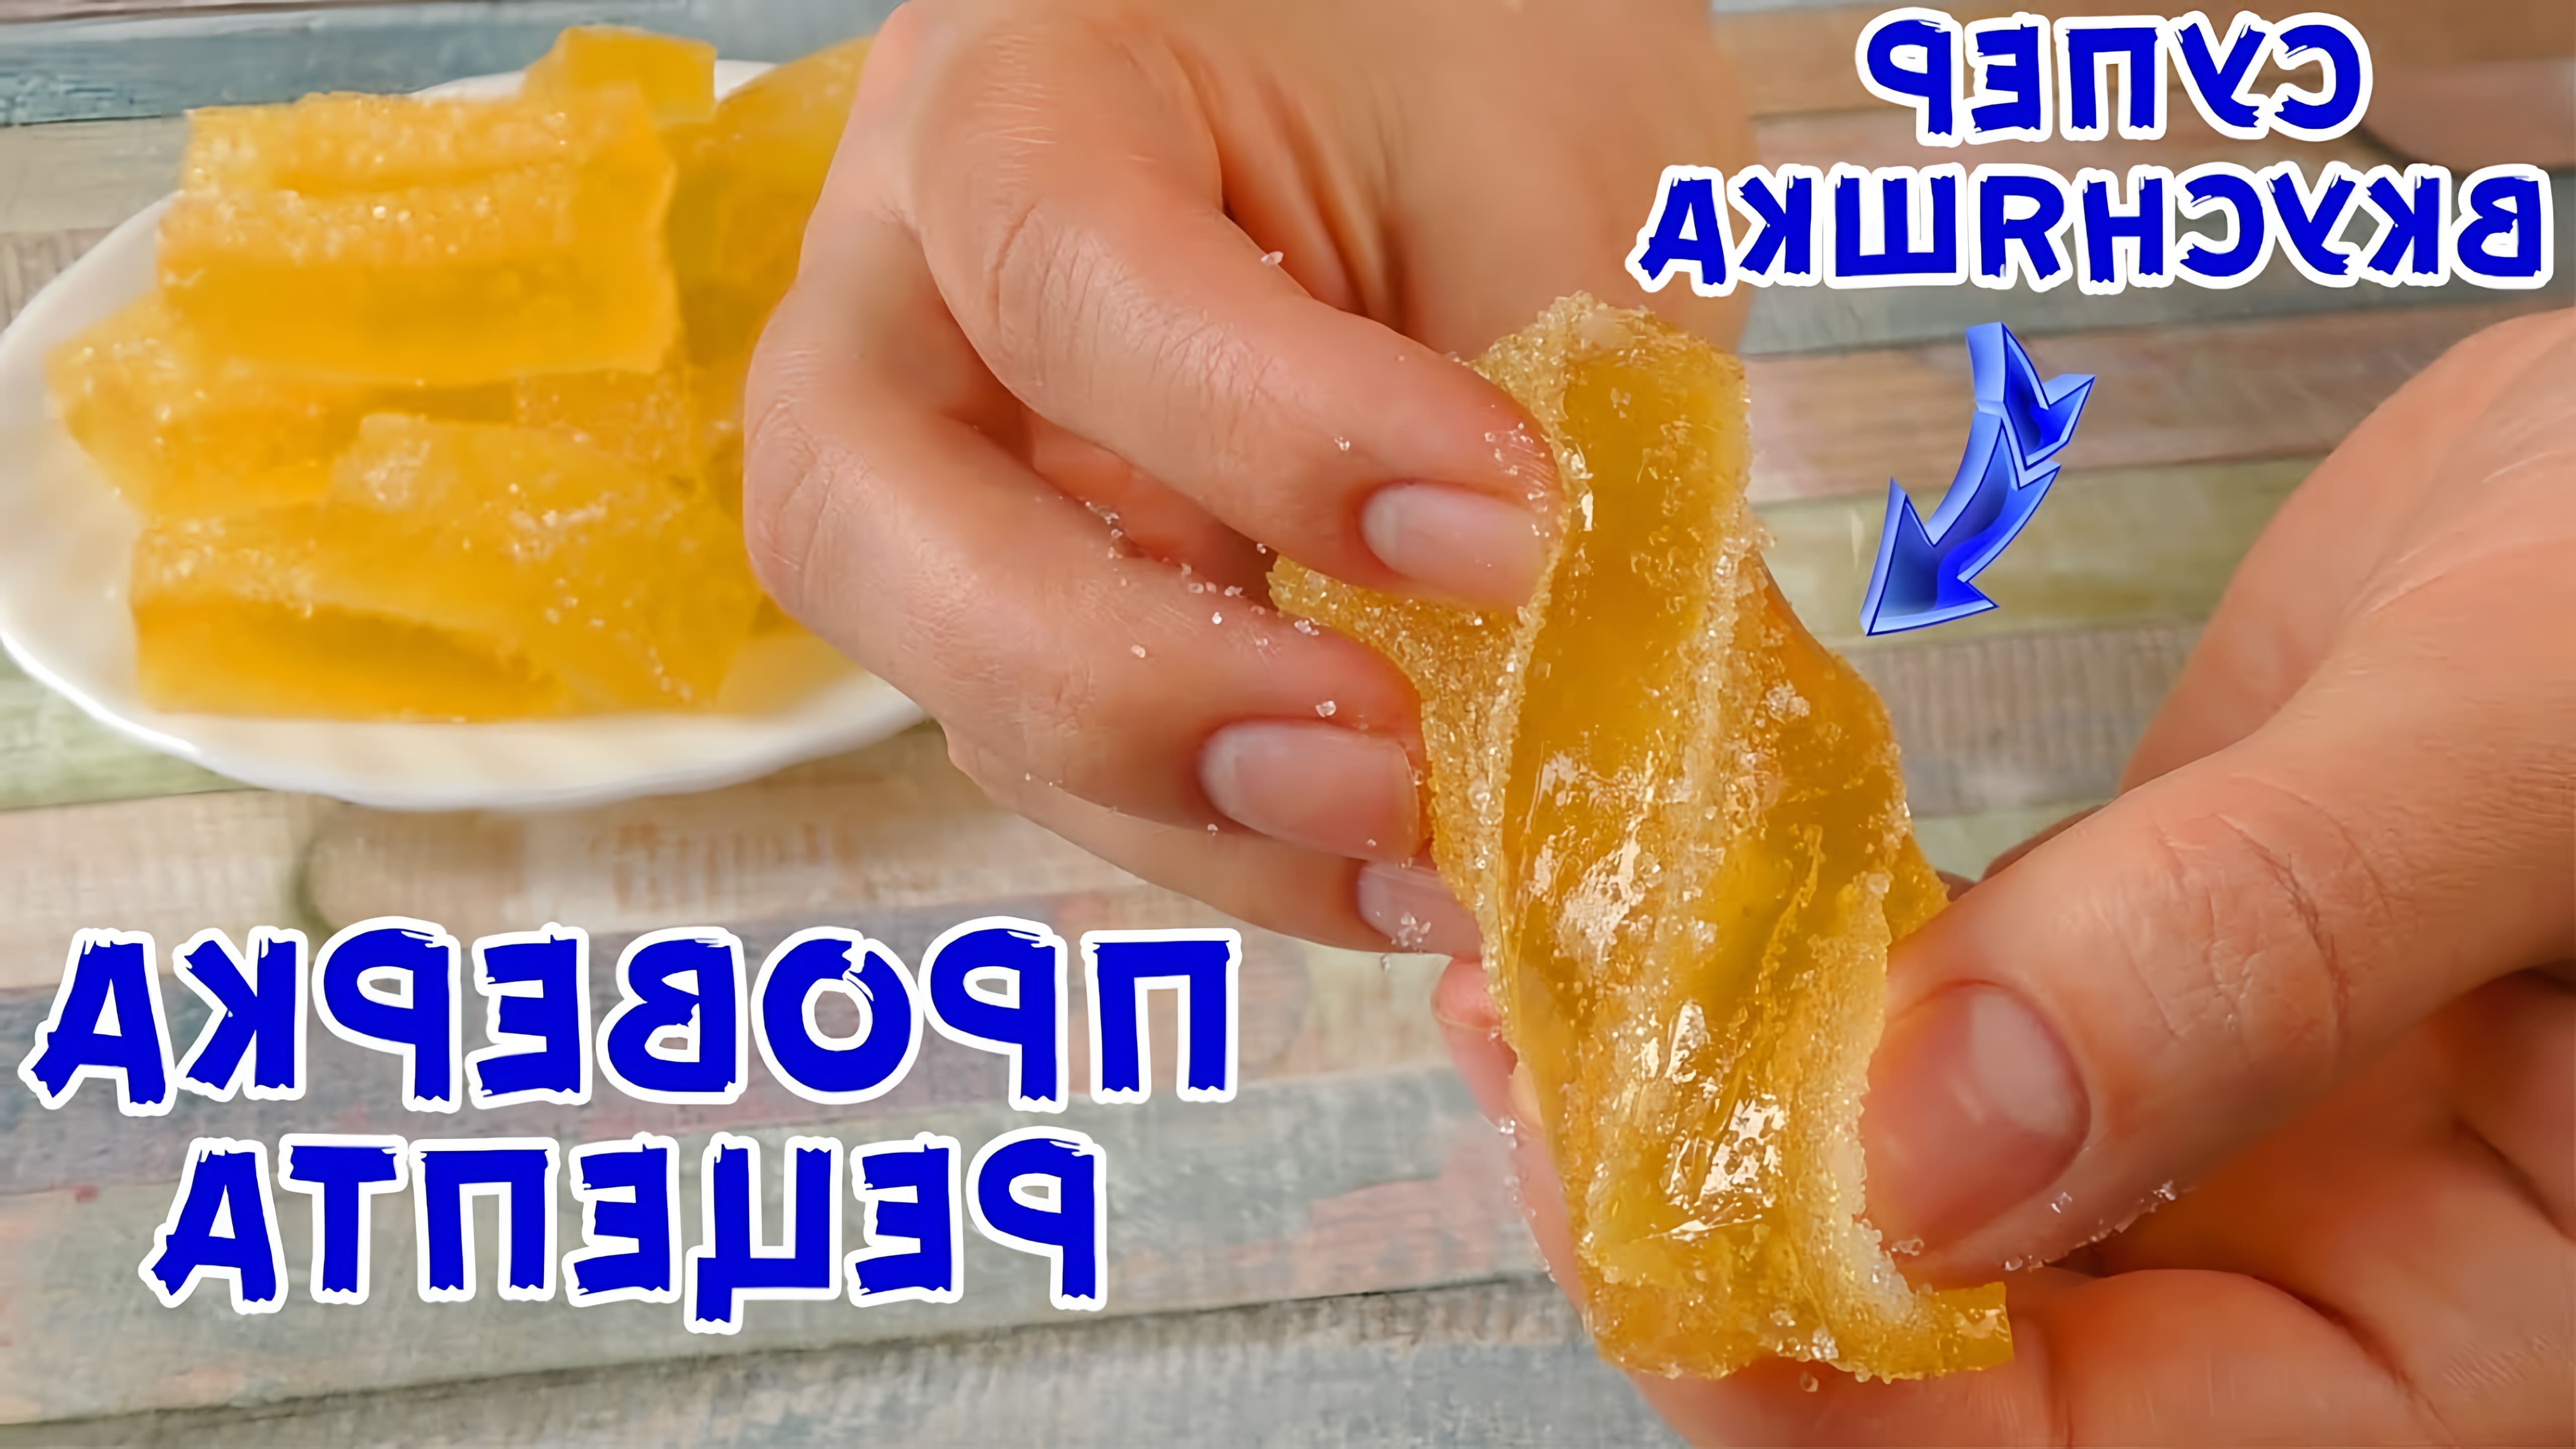 В этом видео демонстрируется процесс приготовления домашнего мармелада без использования пектина